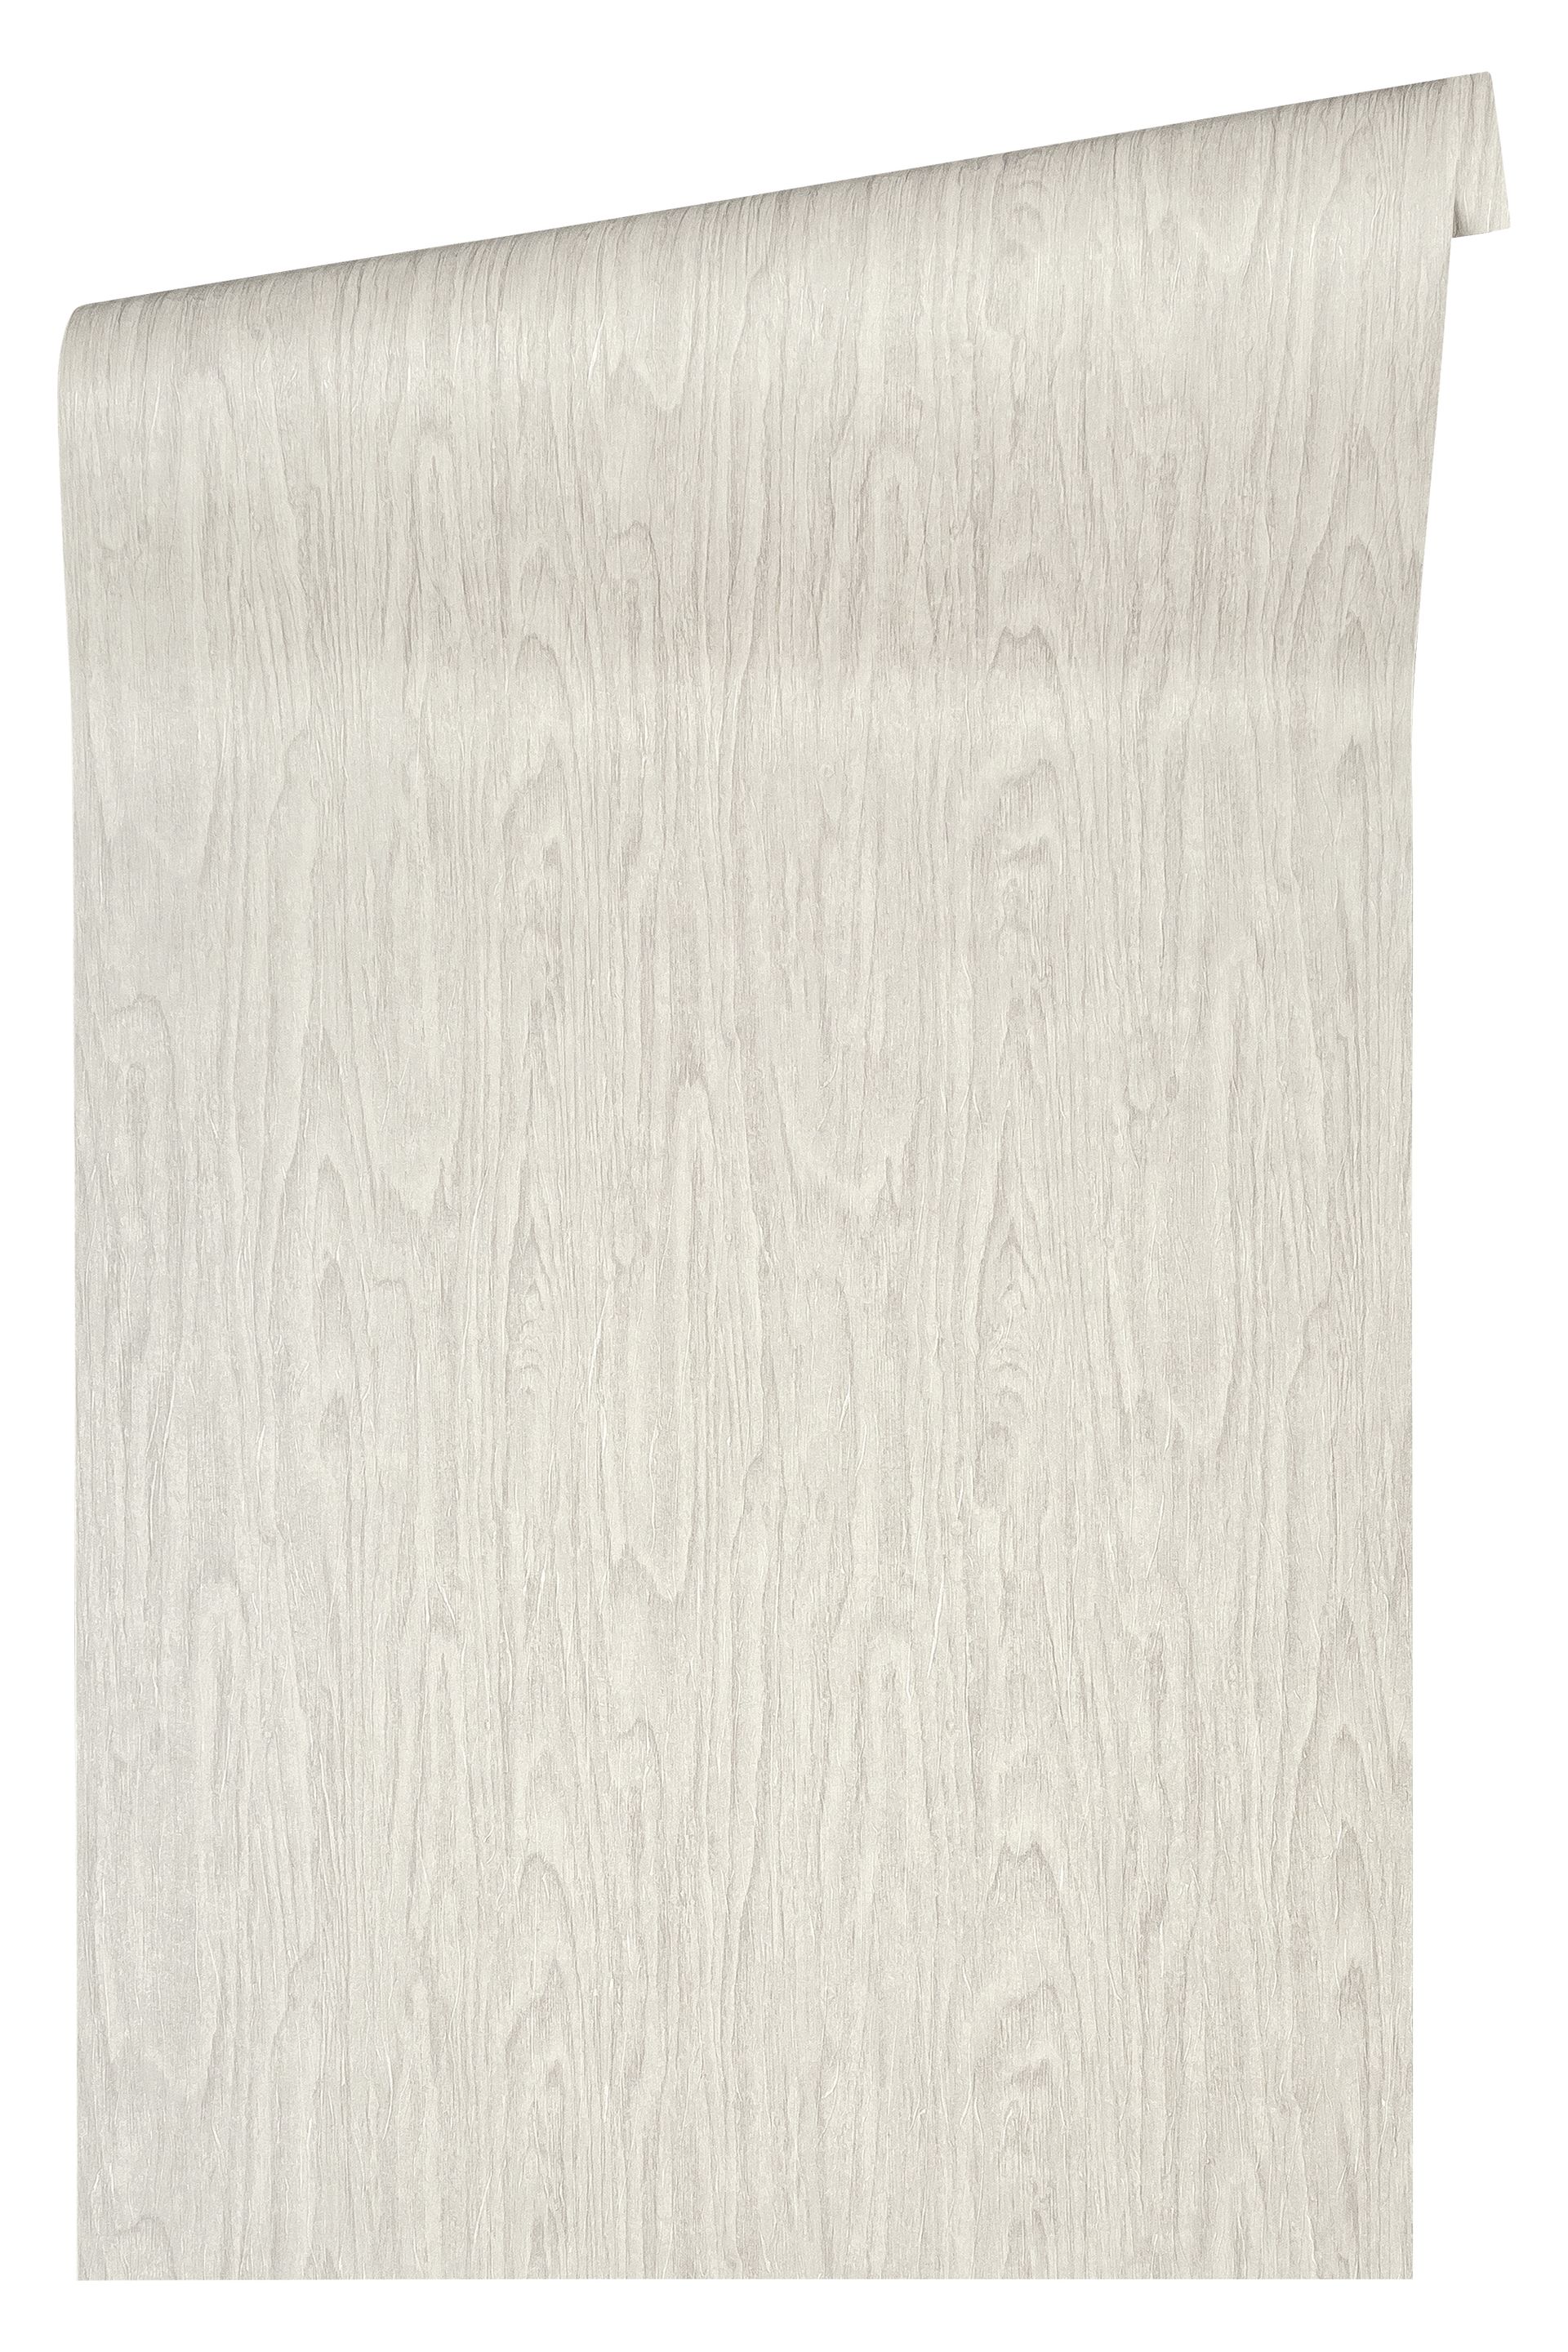 Versace wallpaper Versace 4, Tapete in Holzoptik, beige, creme 370521